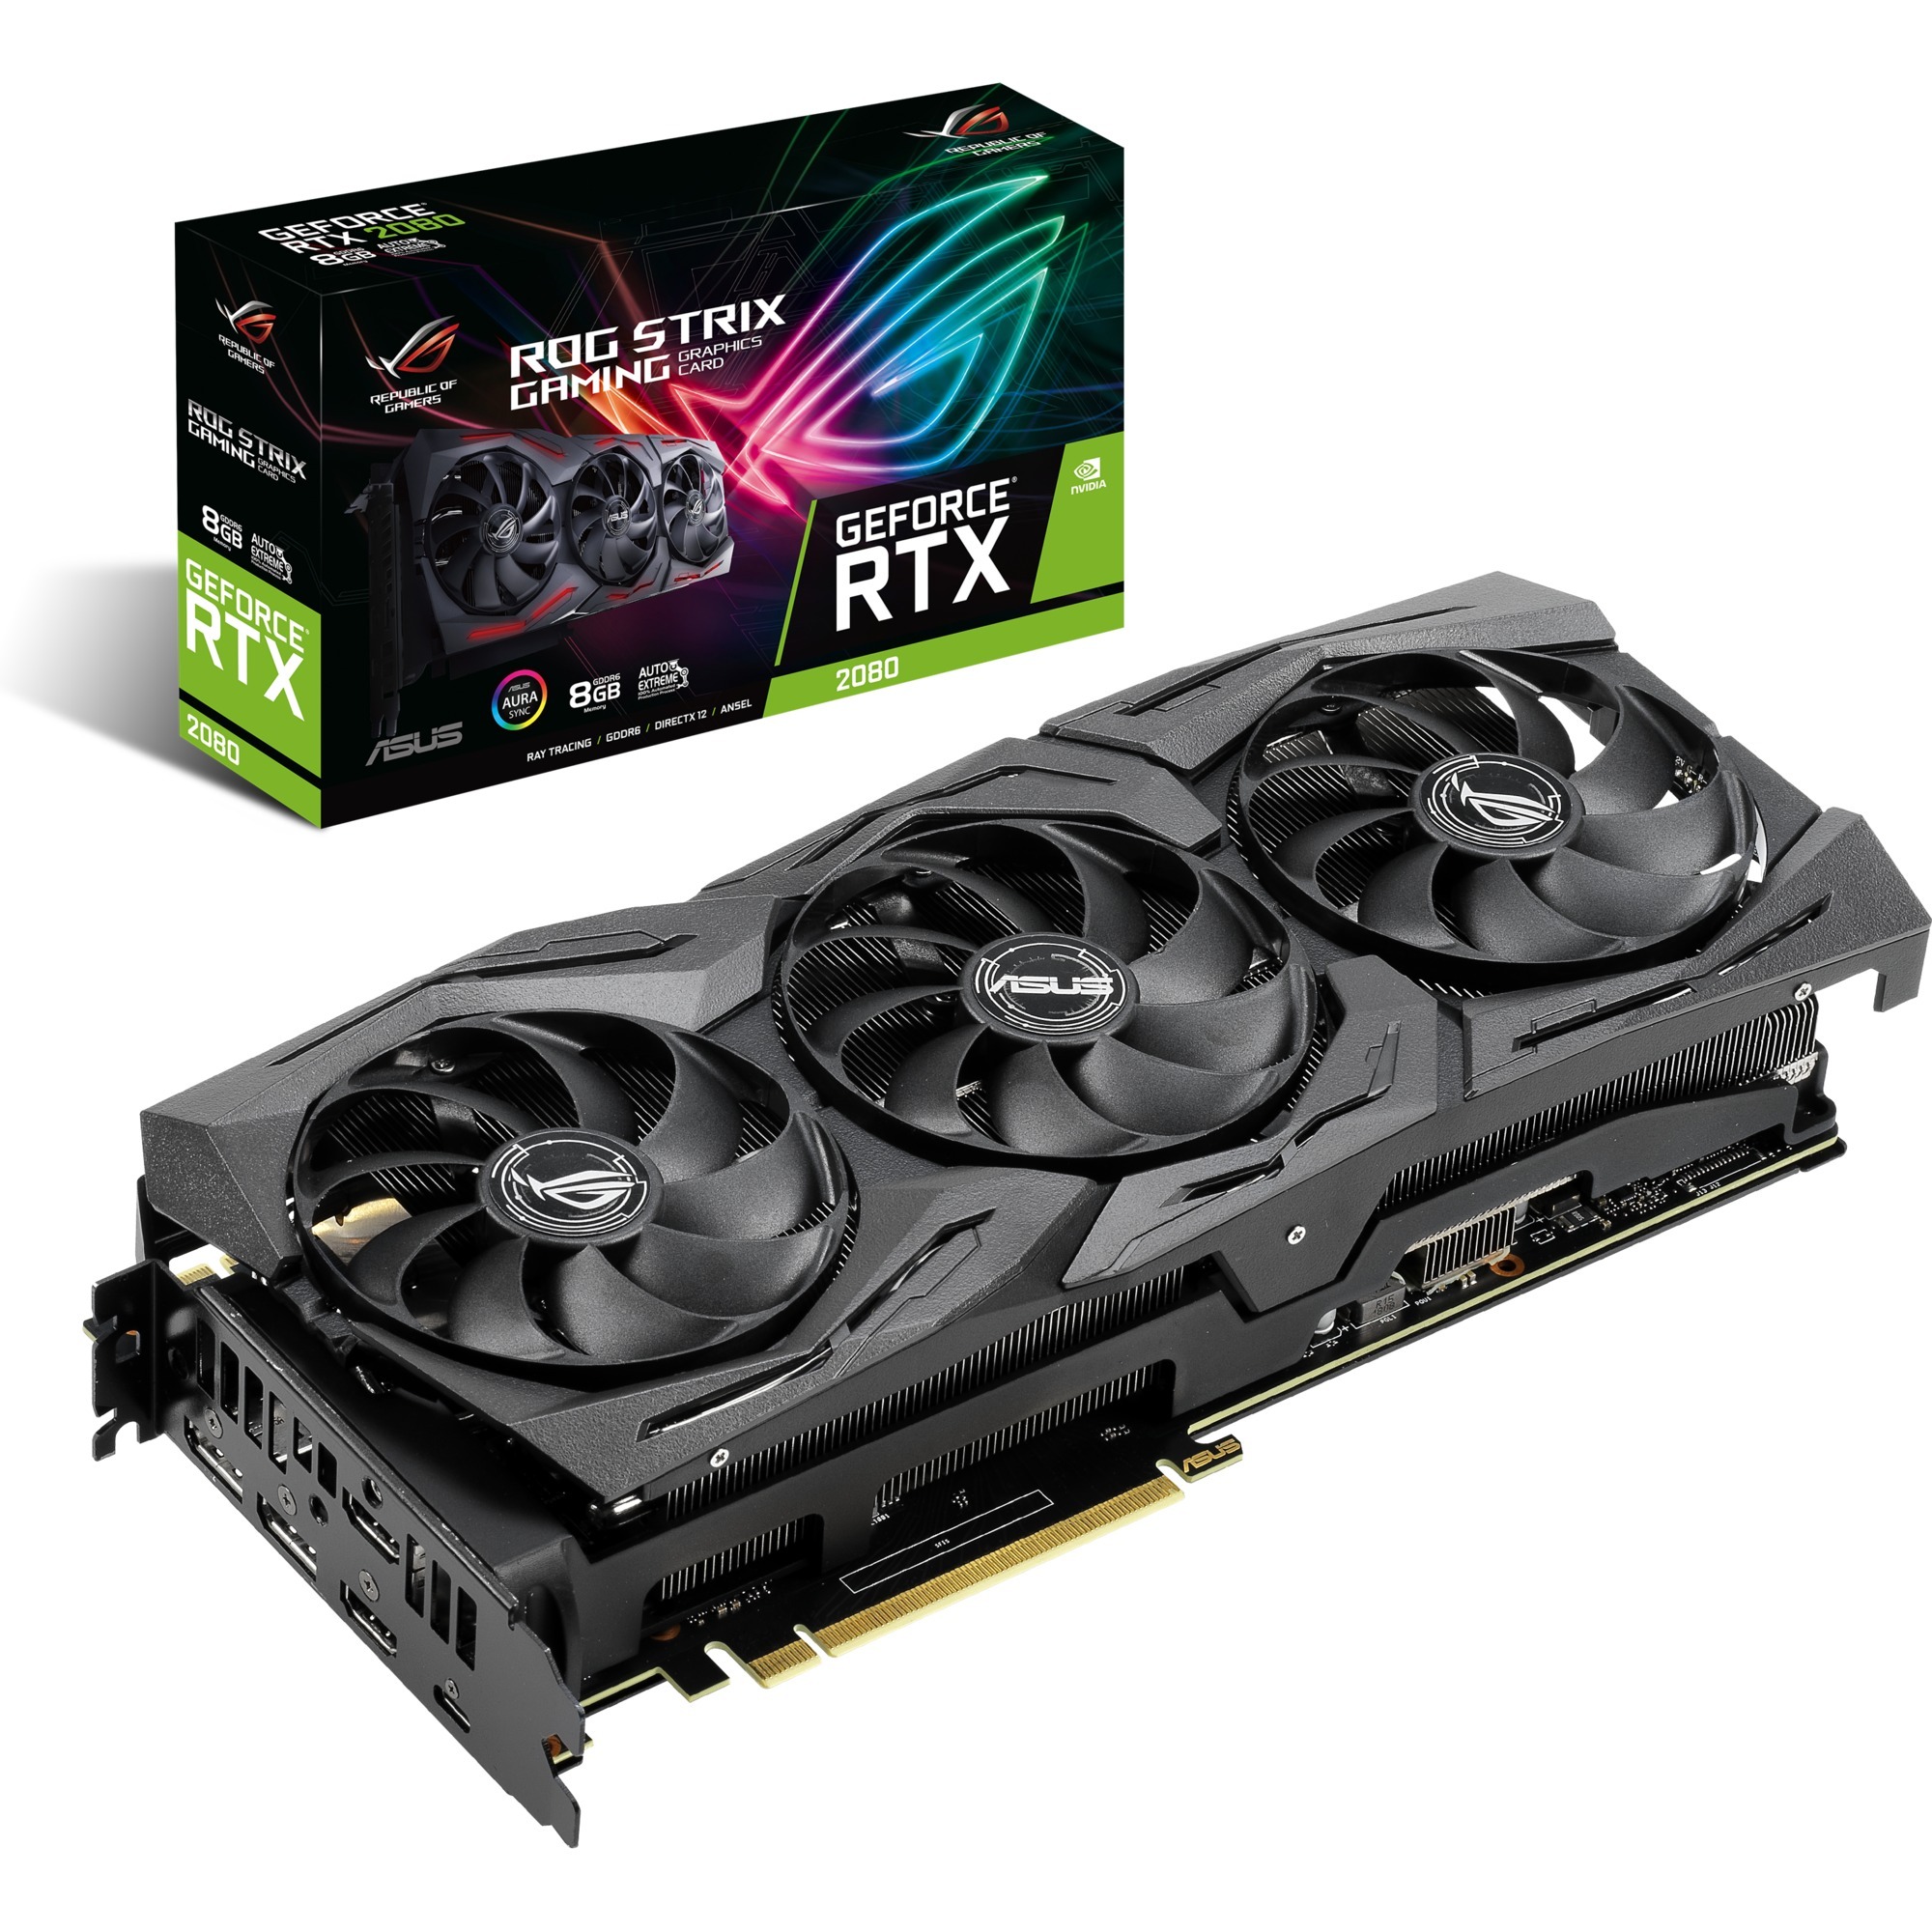 ROG-STRIX RTX2080-8G-GAMING GeForce RTX 2080 8 GB GDDR6, Karta graficzna